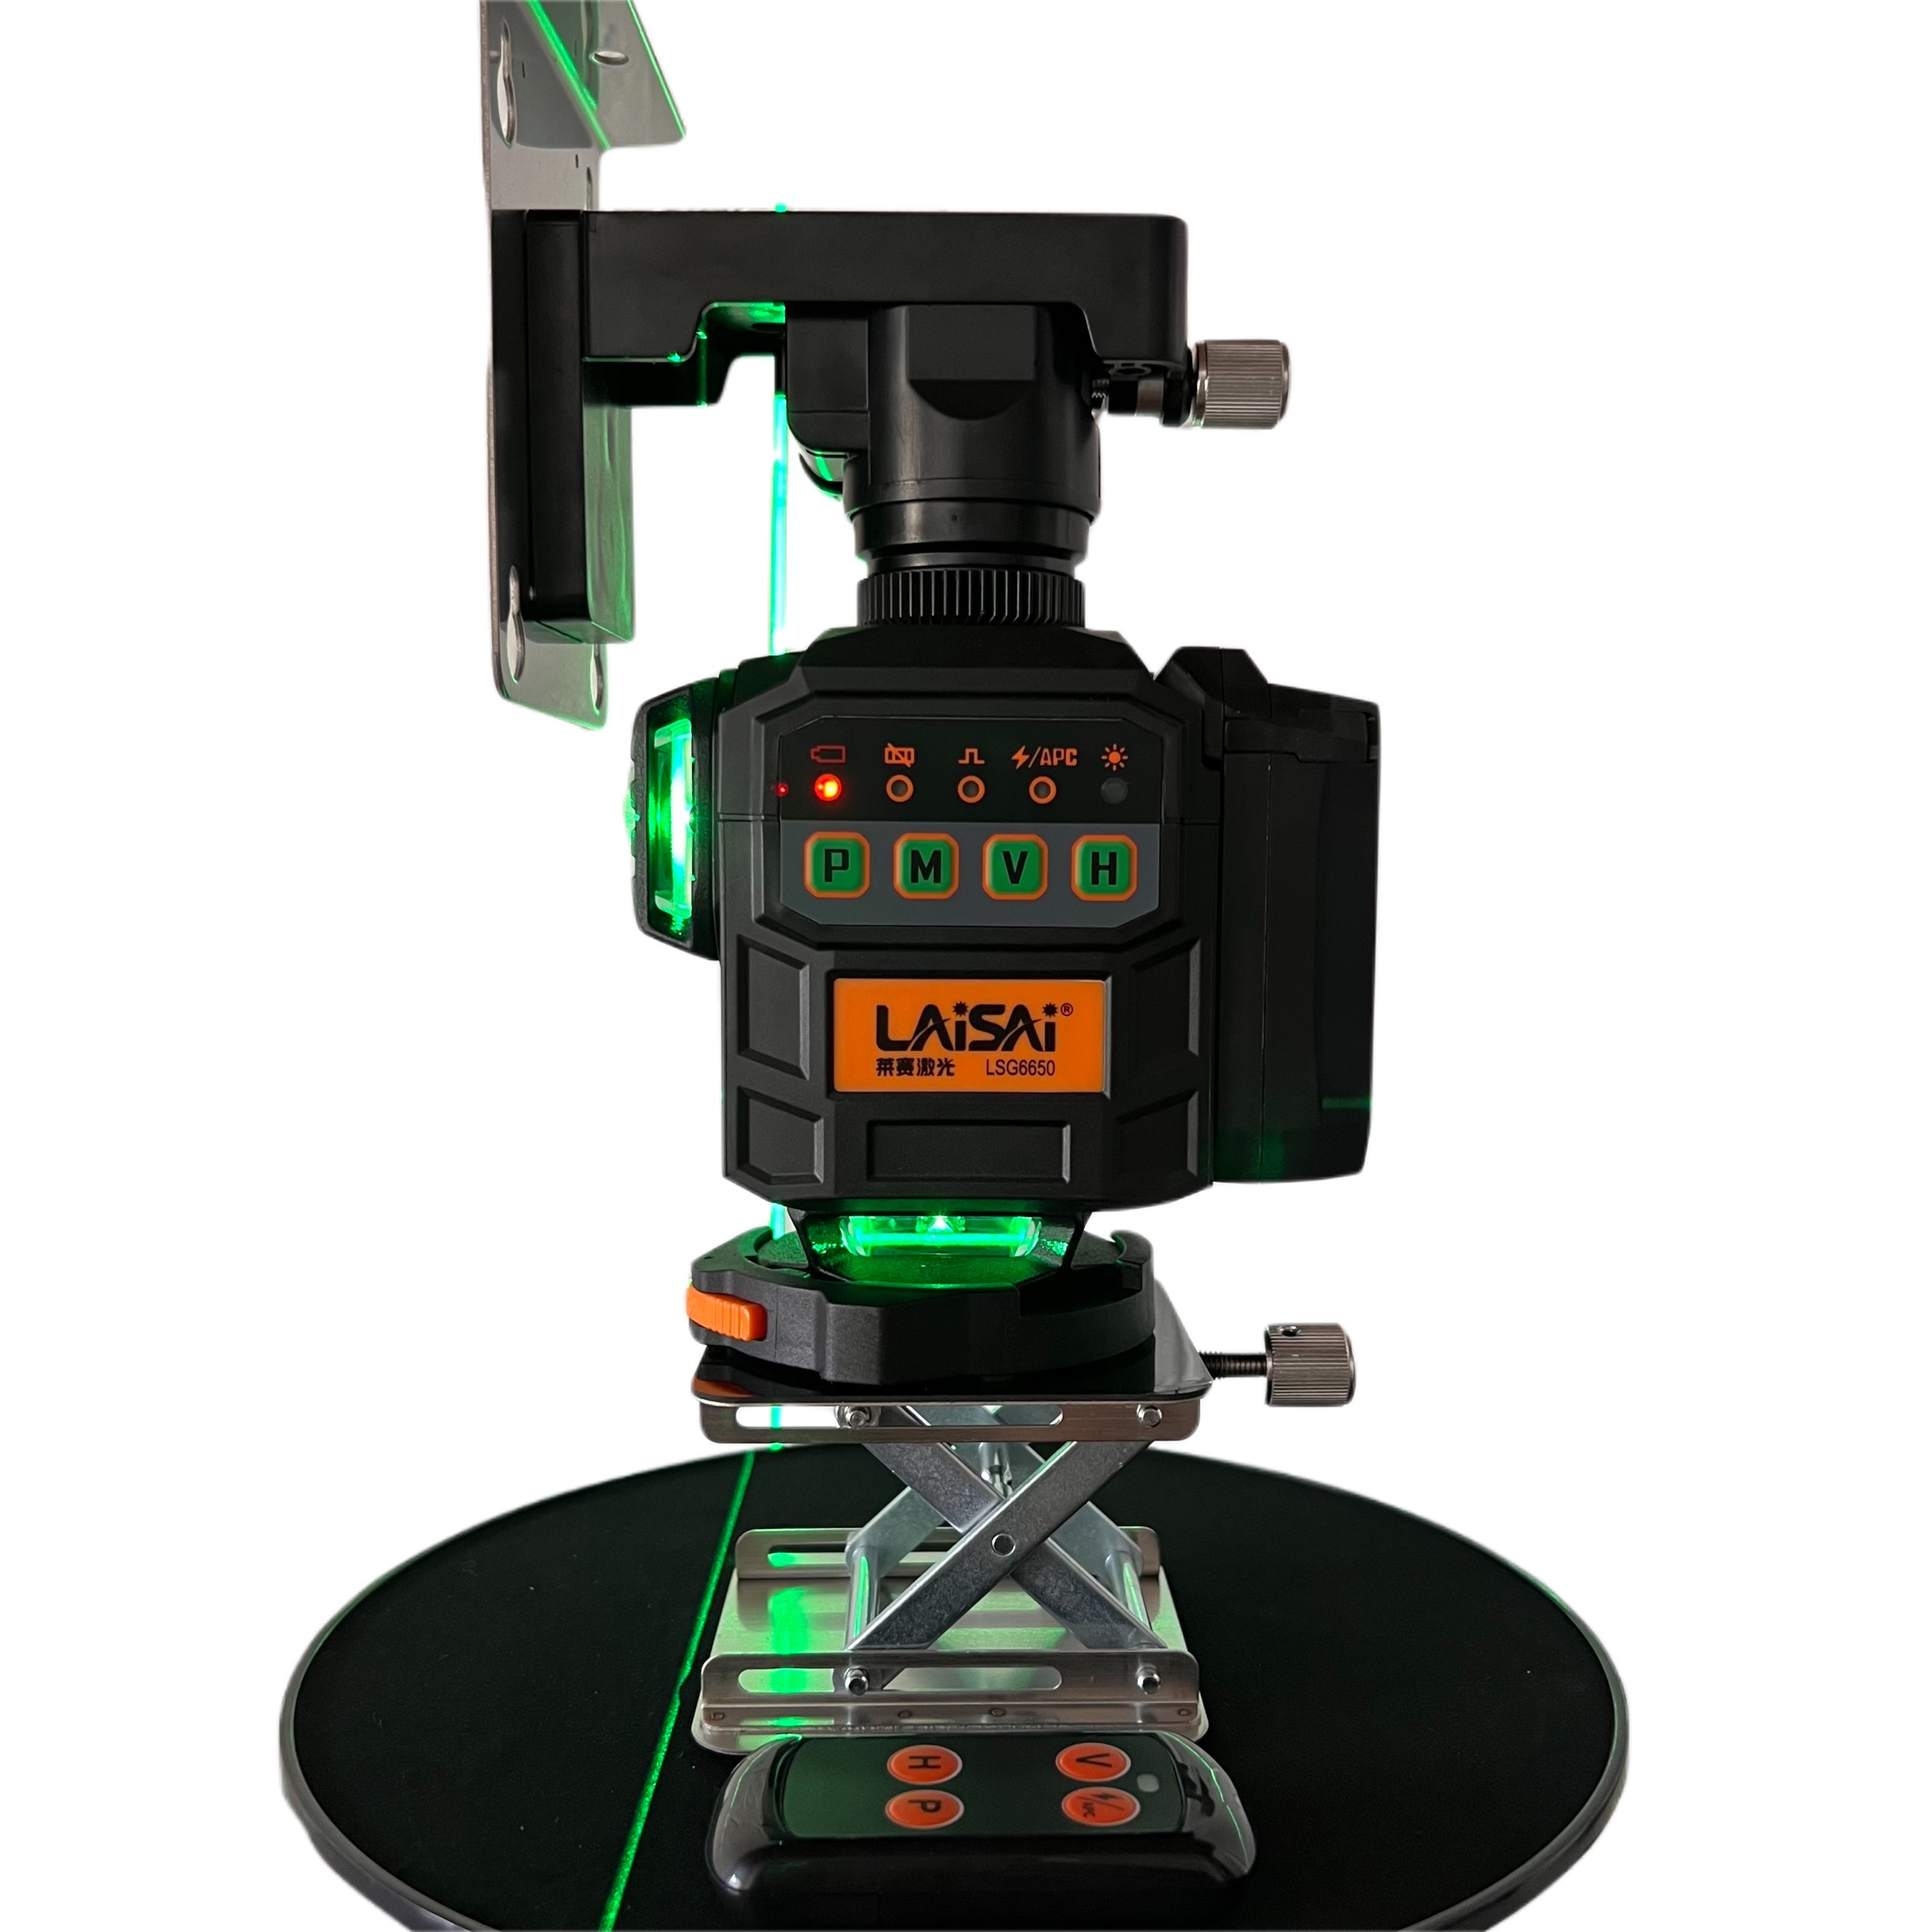 Laisai LSG-6650 - Máy cân bằng laser 12 tia xanh siêu sáng, siêu bền